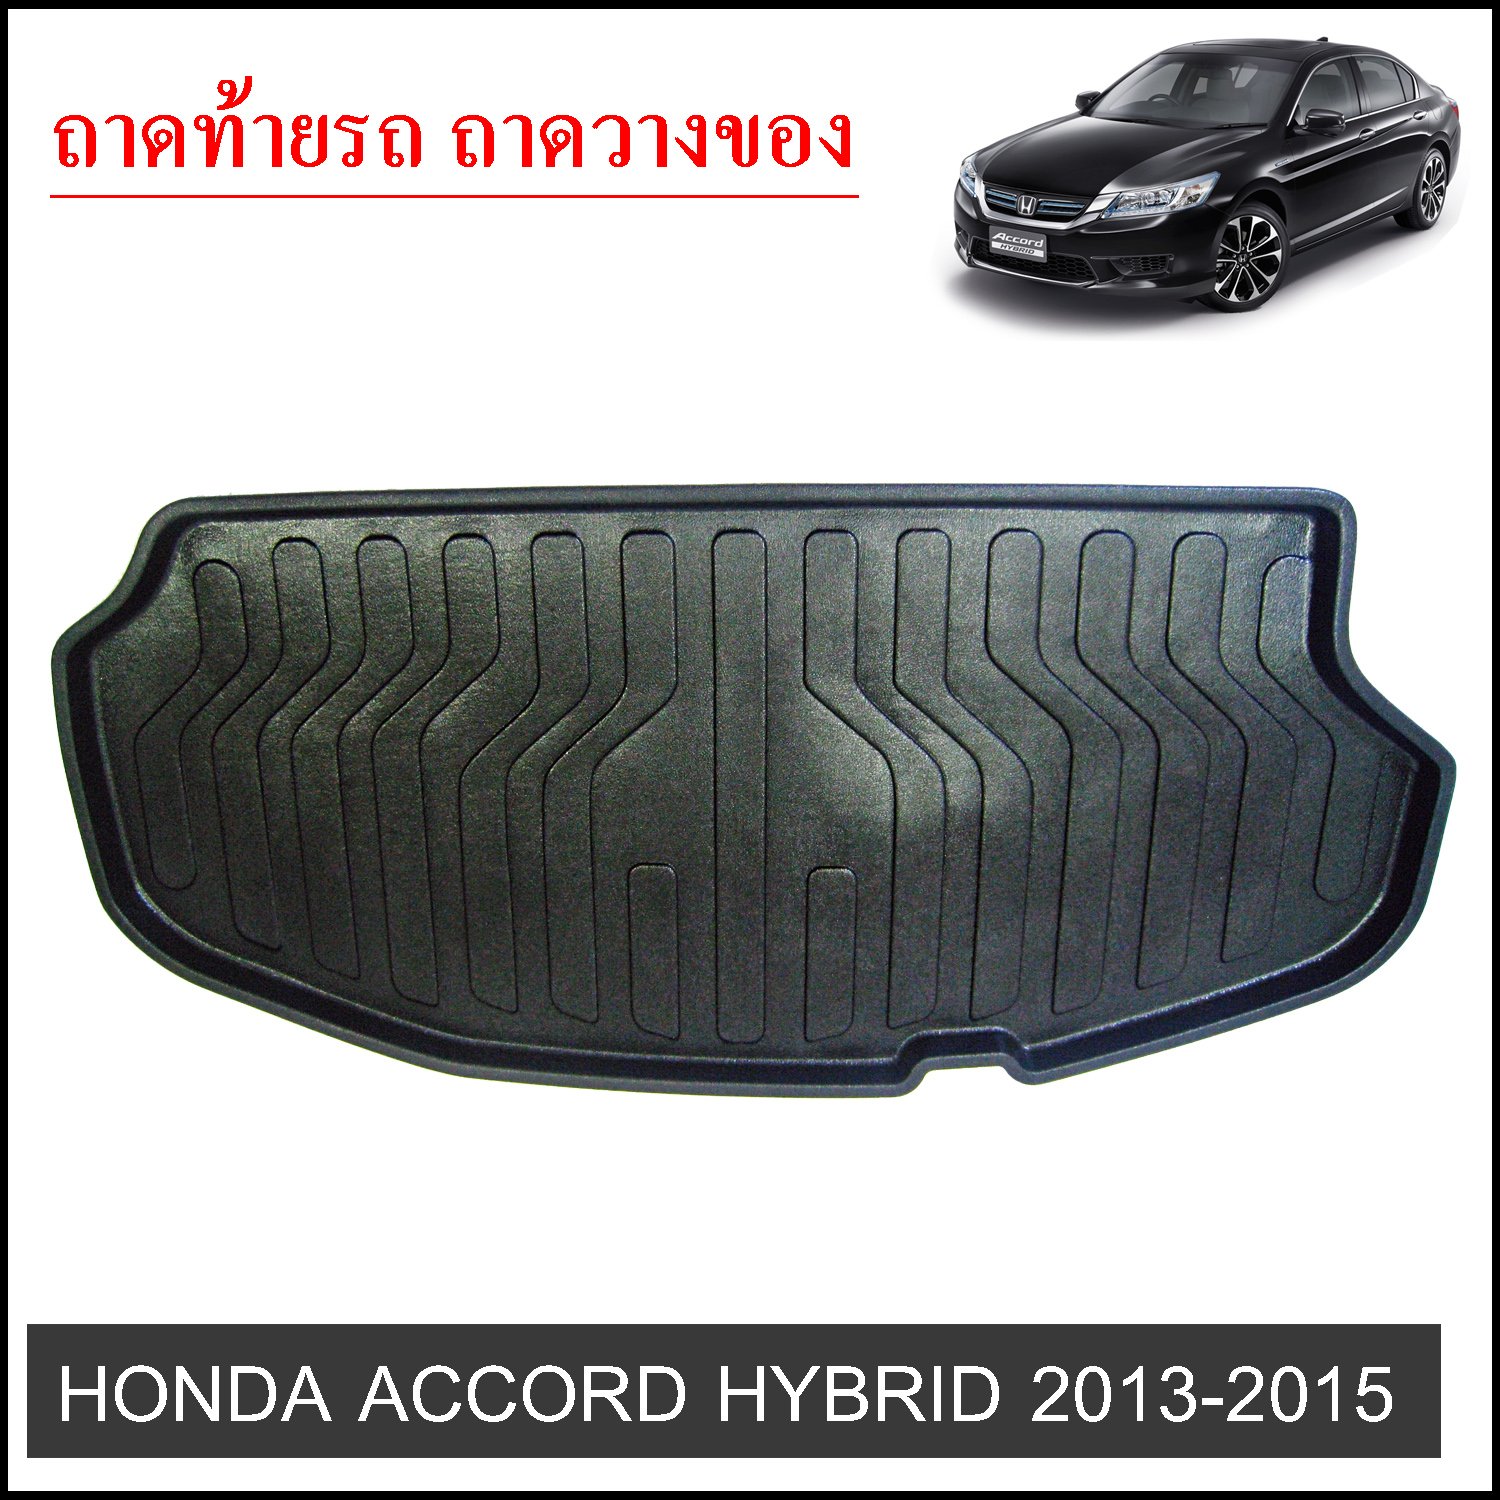 Honda Accord 2013-2015 HYBRID